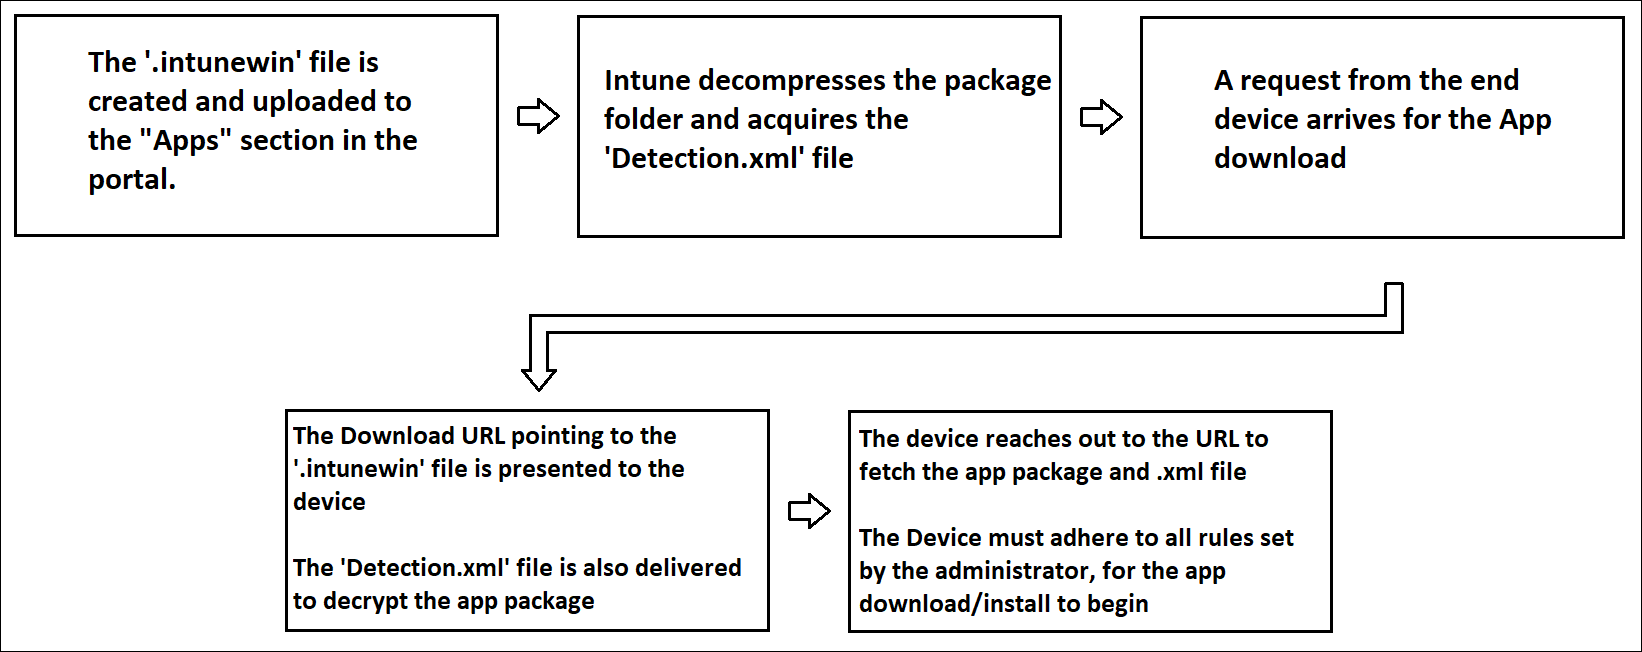 図は、Intuneを介してデバイスに Win32 アプリを配信するフローを示しています。